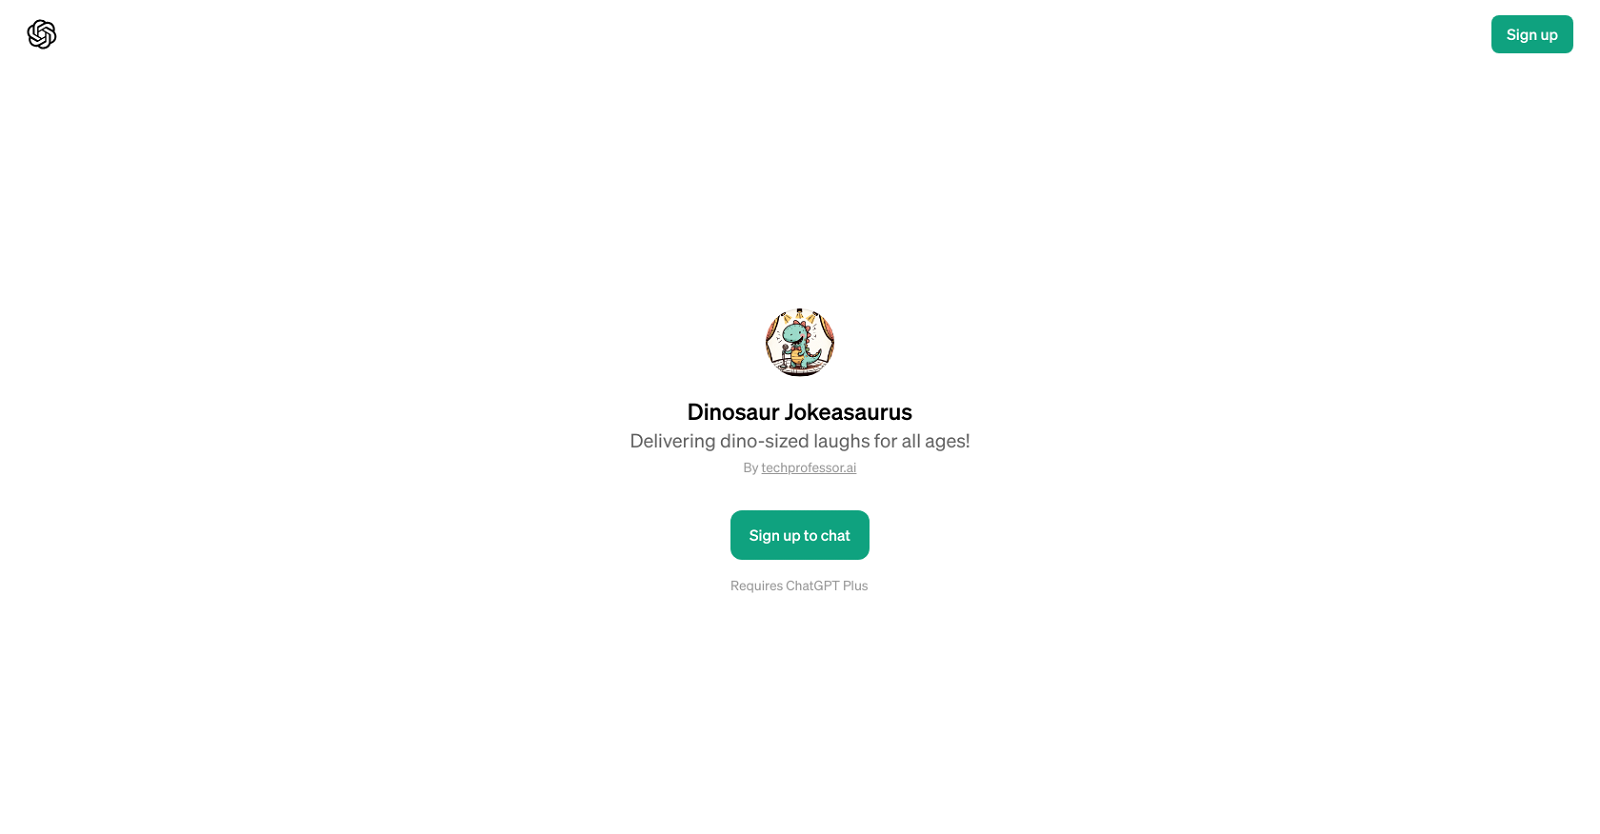 Dinosaur Jokeasaurus website